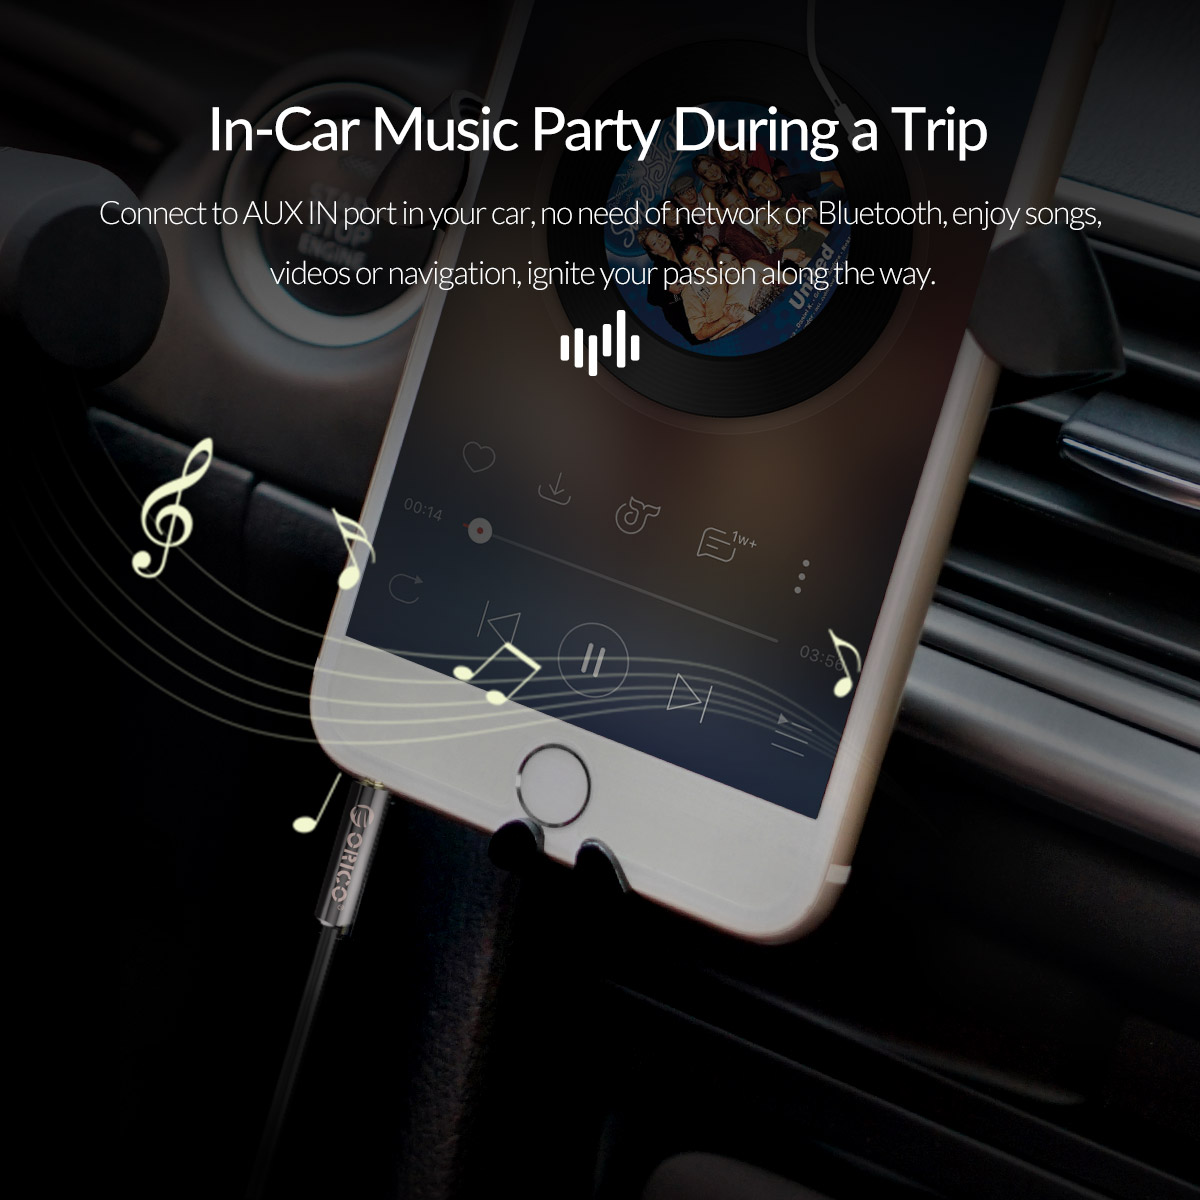 برای شنیدن موسیقی در خودرو و در طول سفر